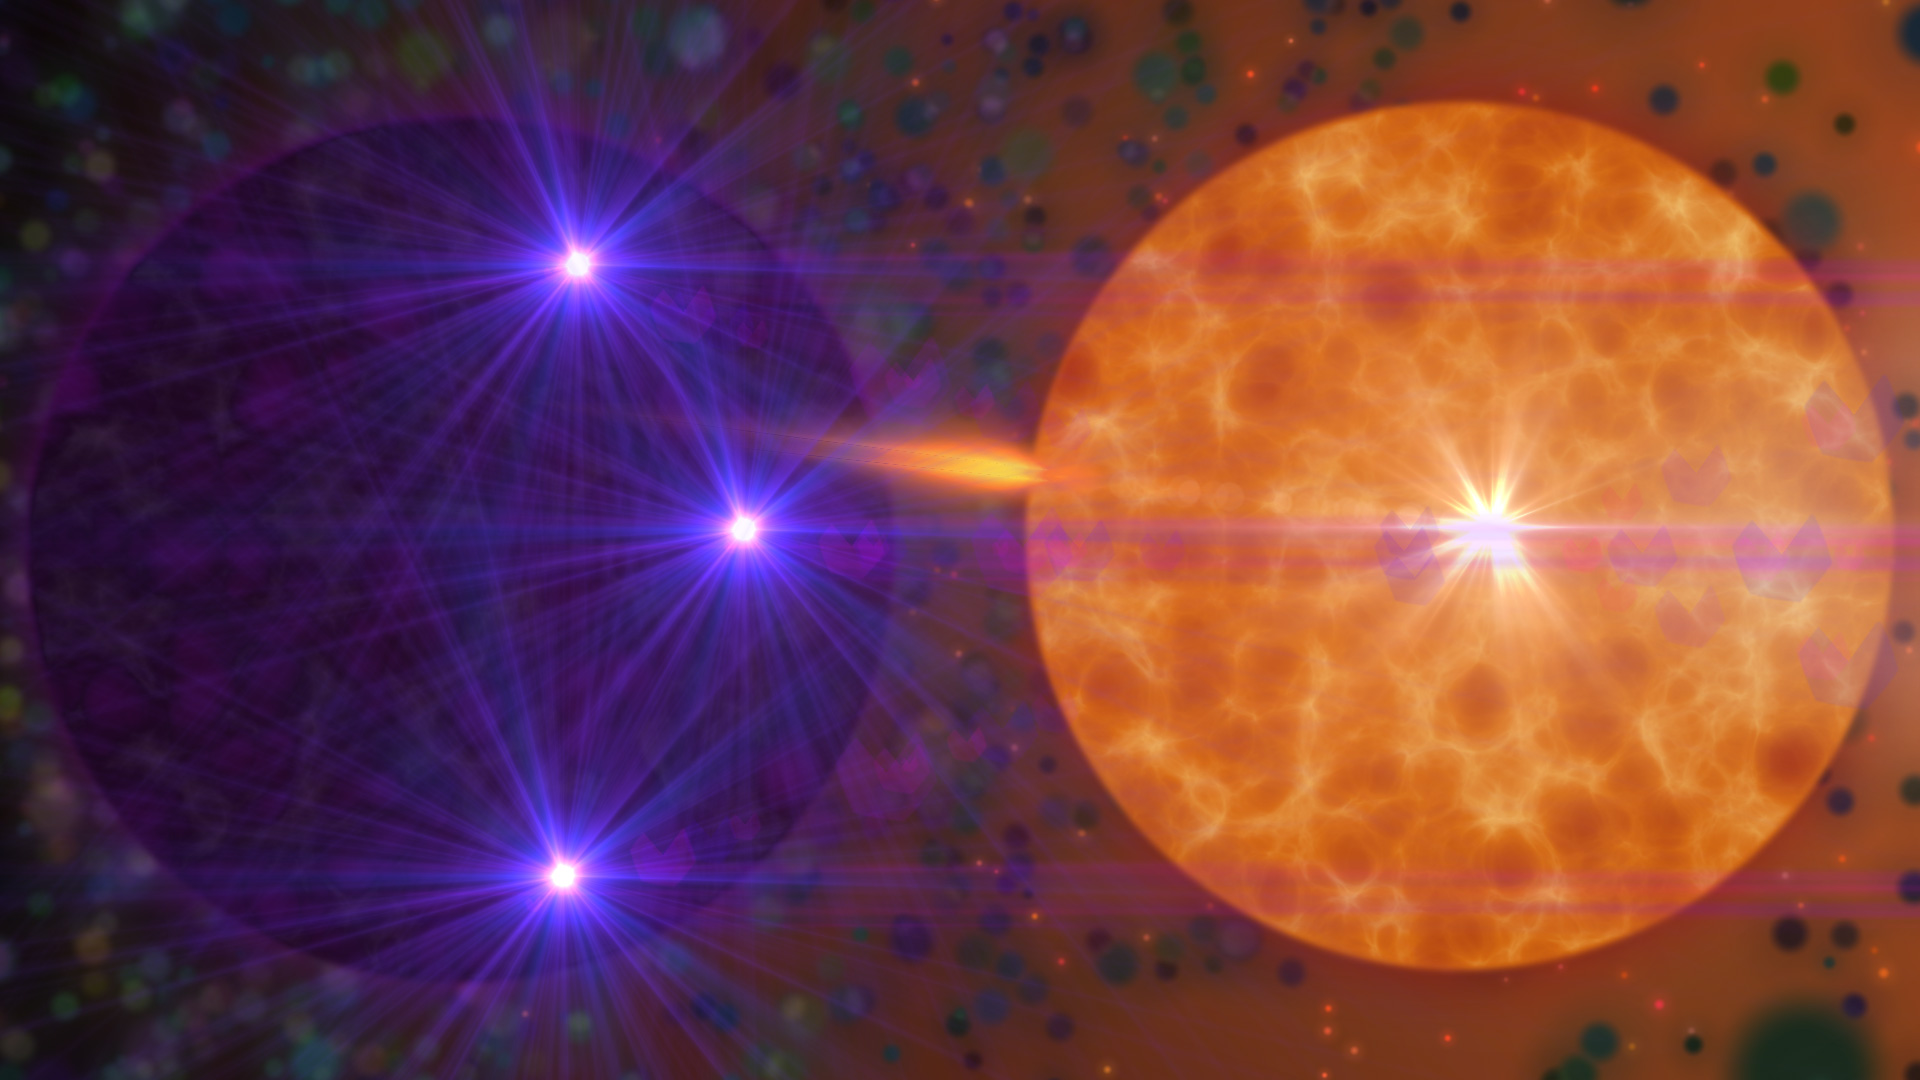 Sun, outer space, stars - desktop wallpaper